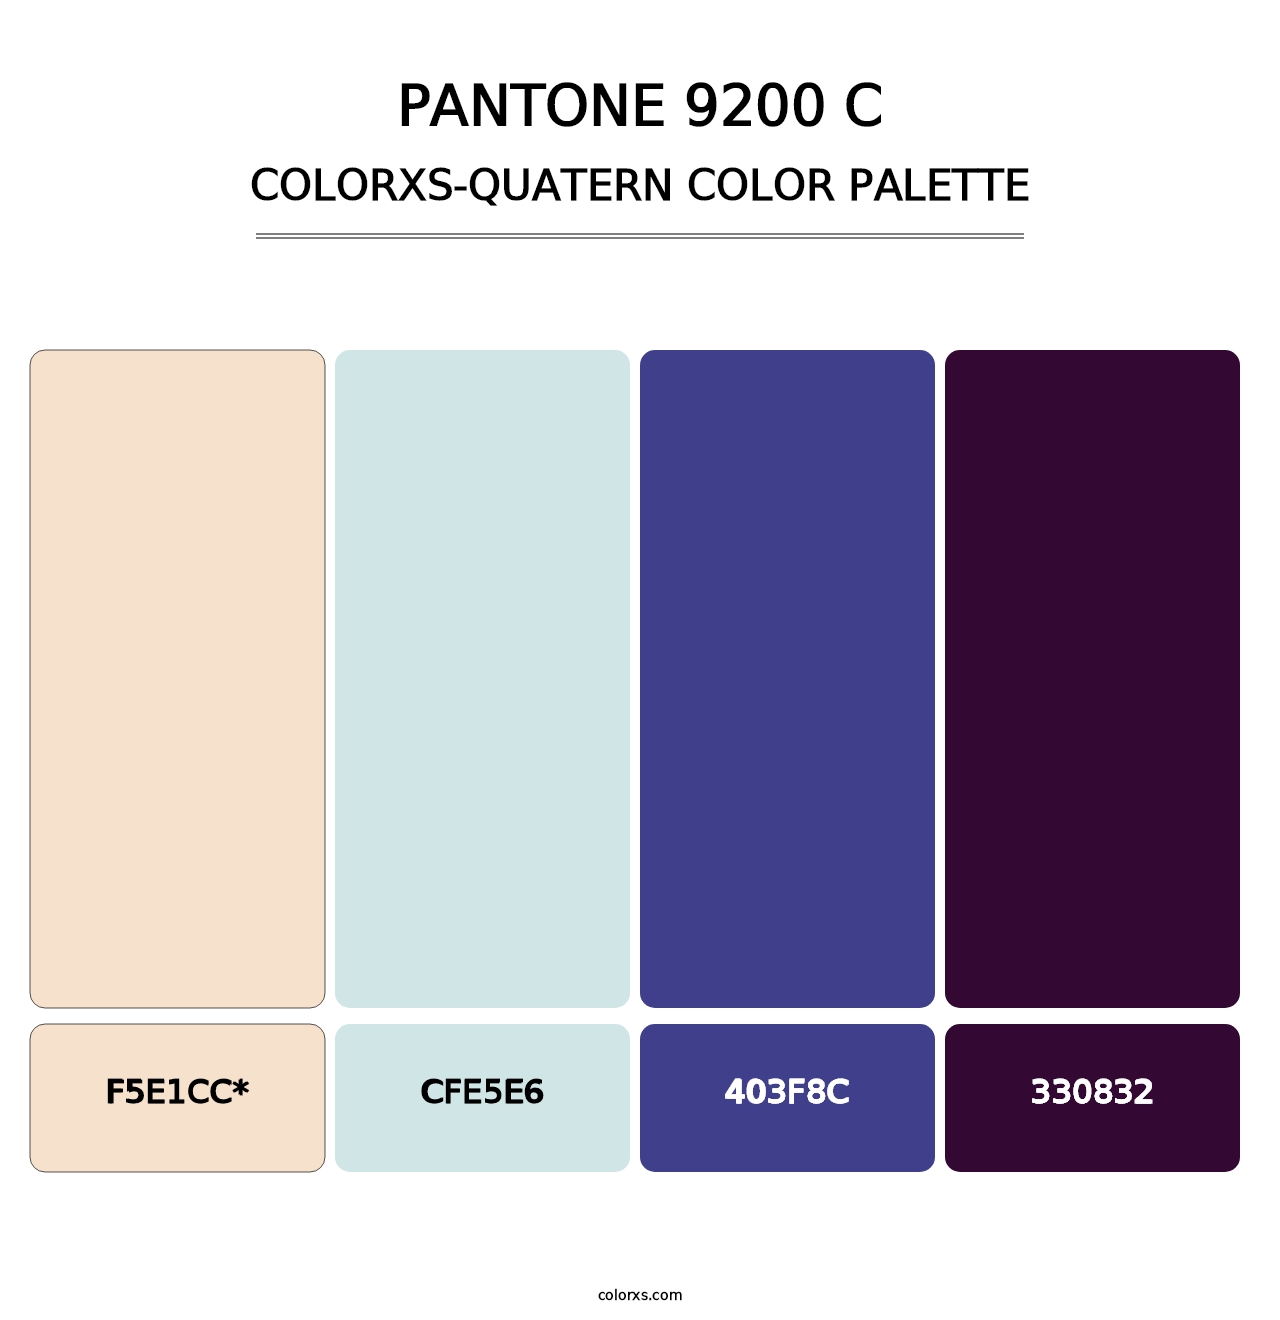 PANTONE 9200 C - Colorxs Quatern Palette